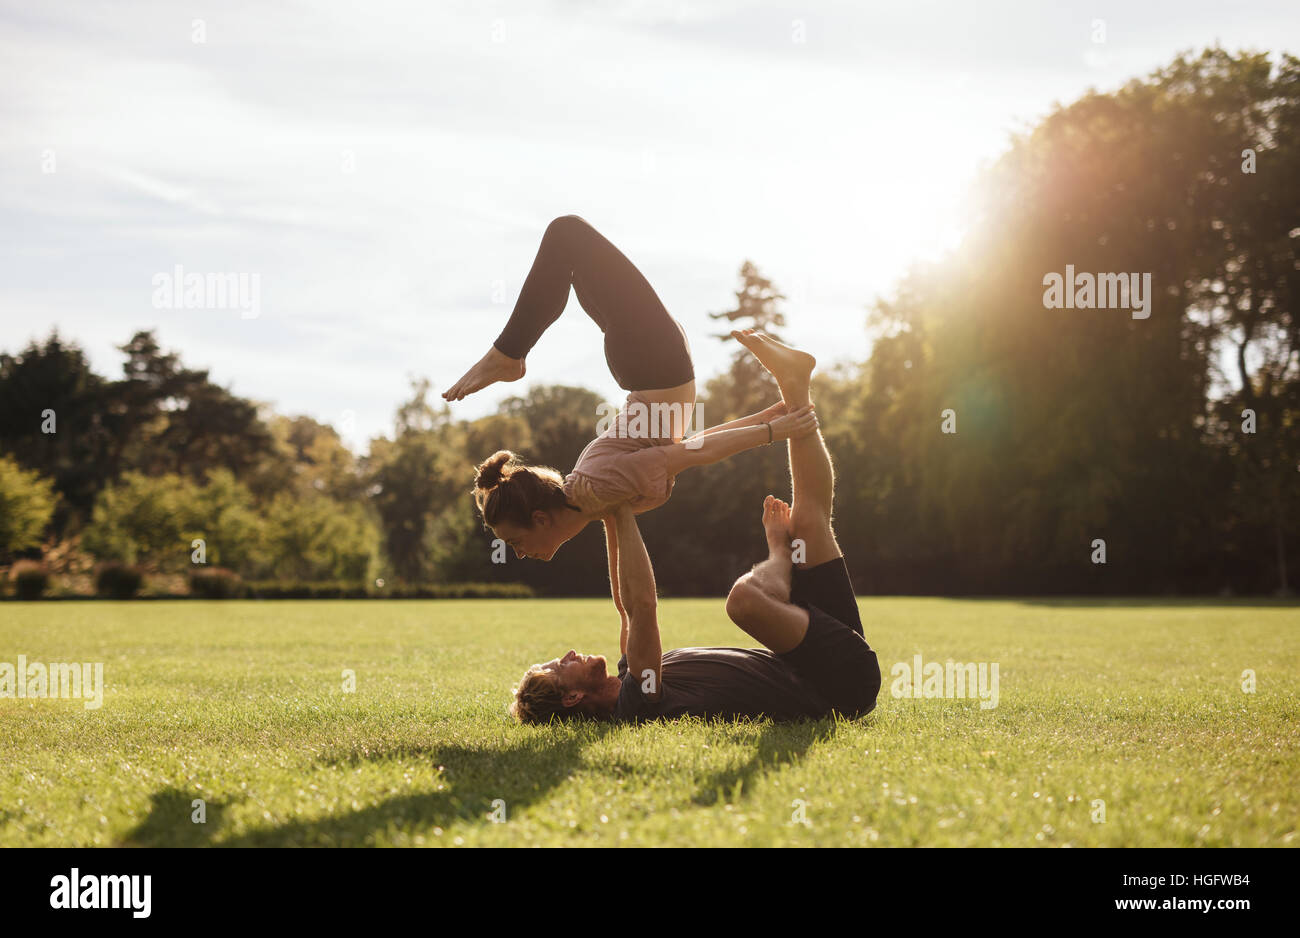 Colocar pareja realizando ejercicios de yoga acrobático en el parque. Hombre tumbado sobre el césped y equilibrar la mujer al aire libre. Foto de stock